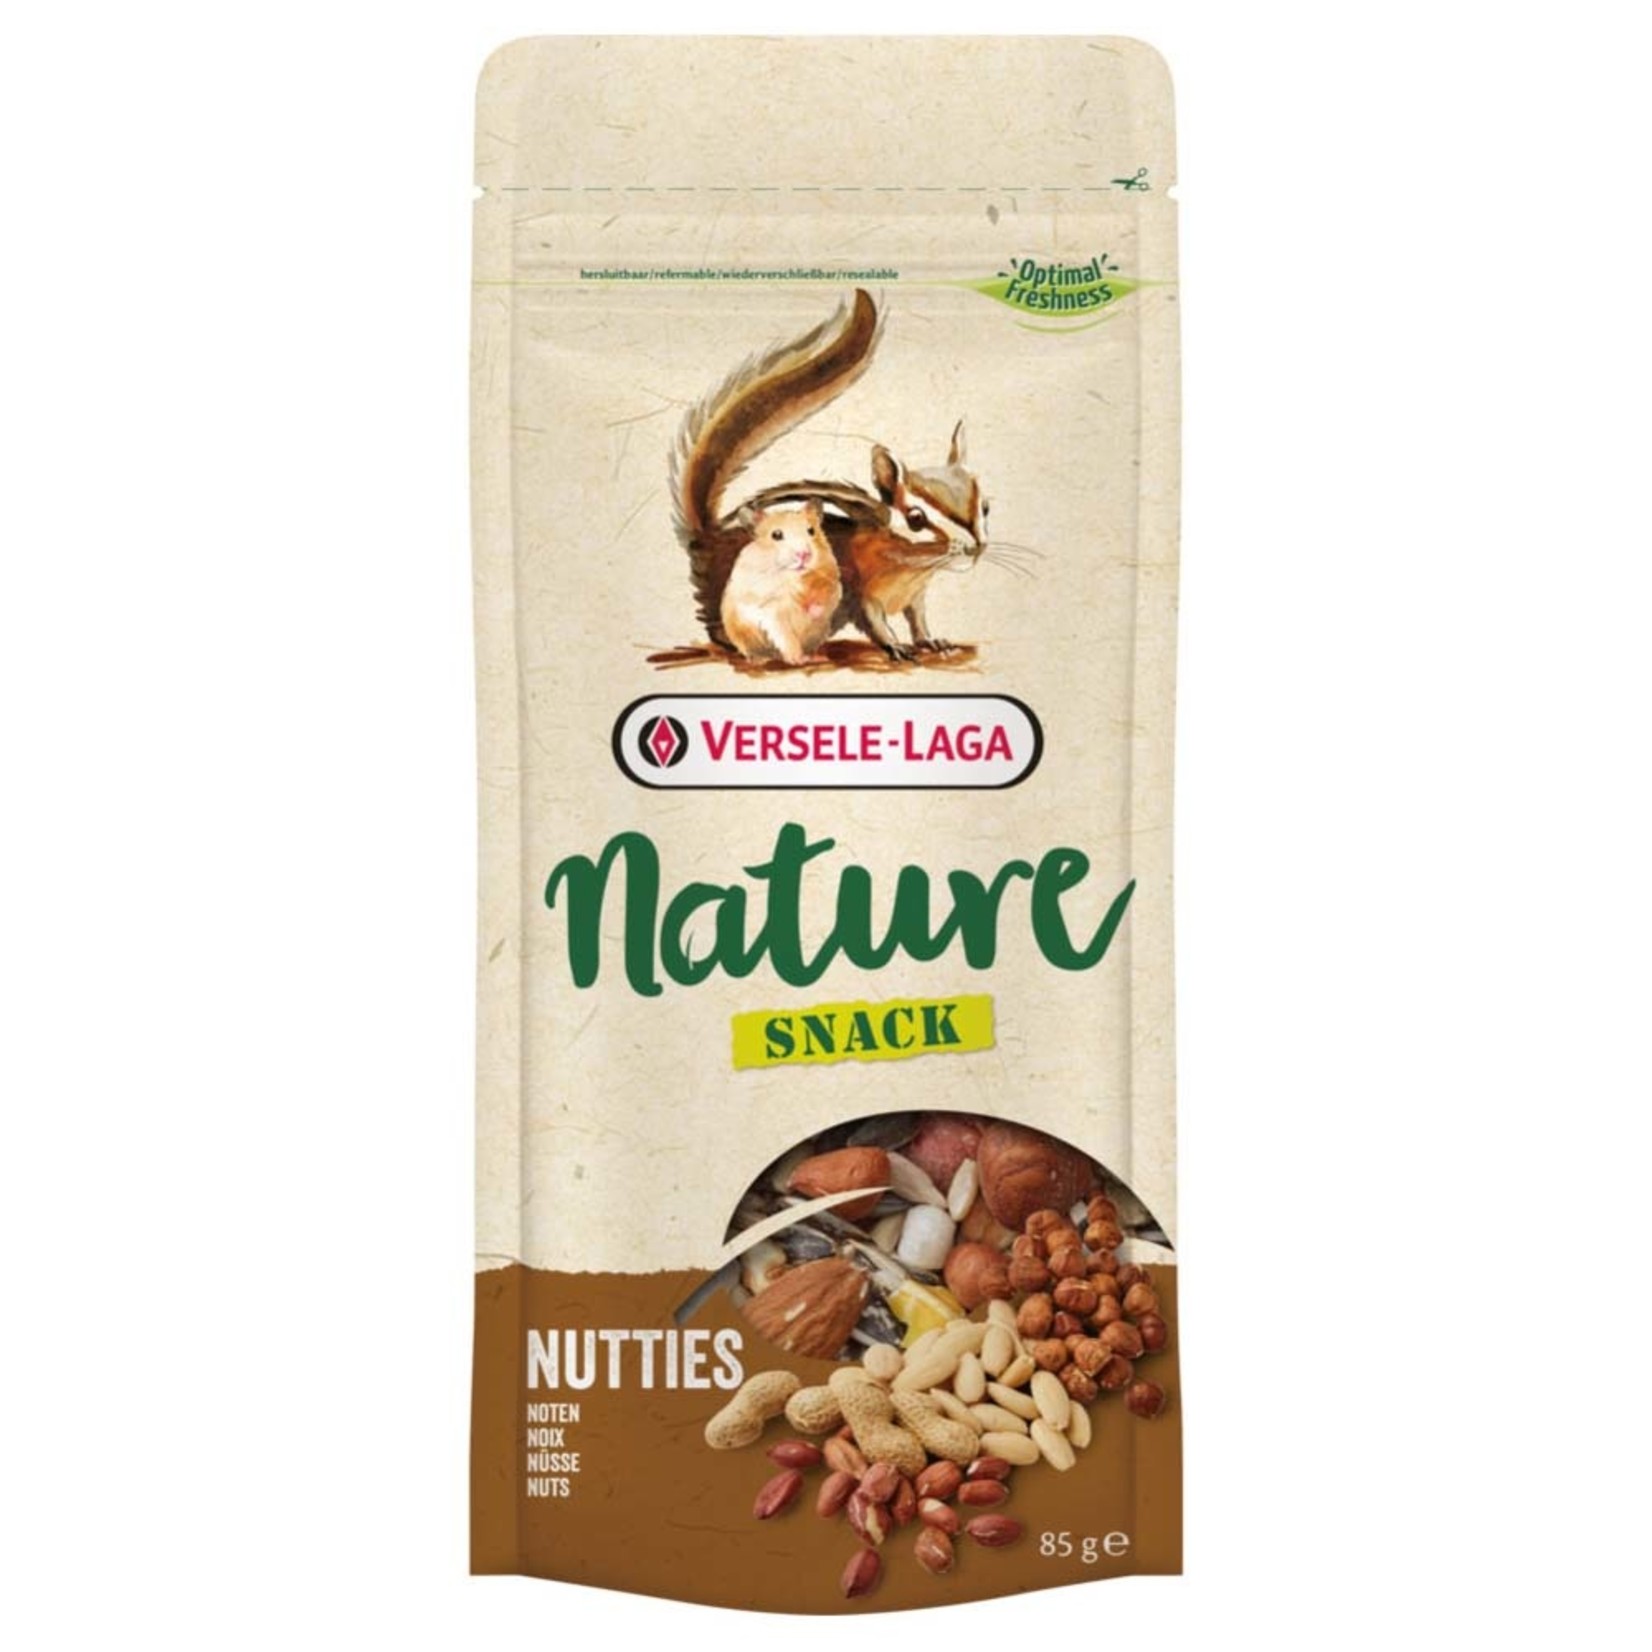 Nature Snack - Nutties